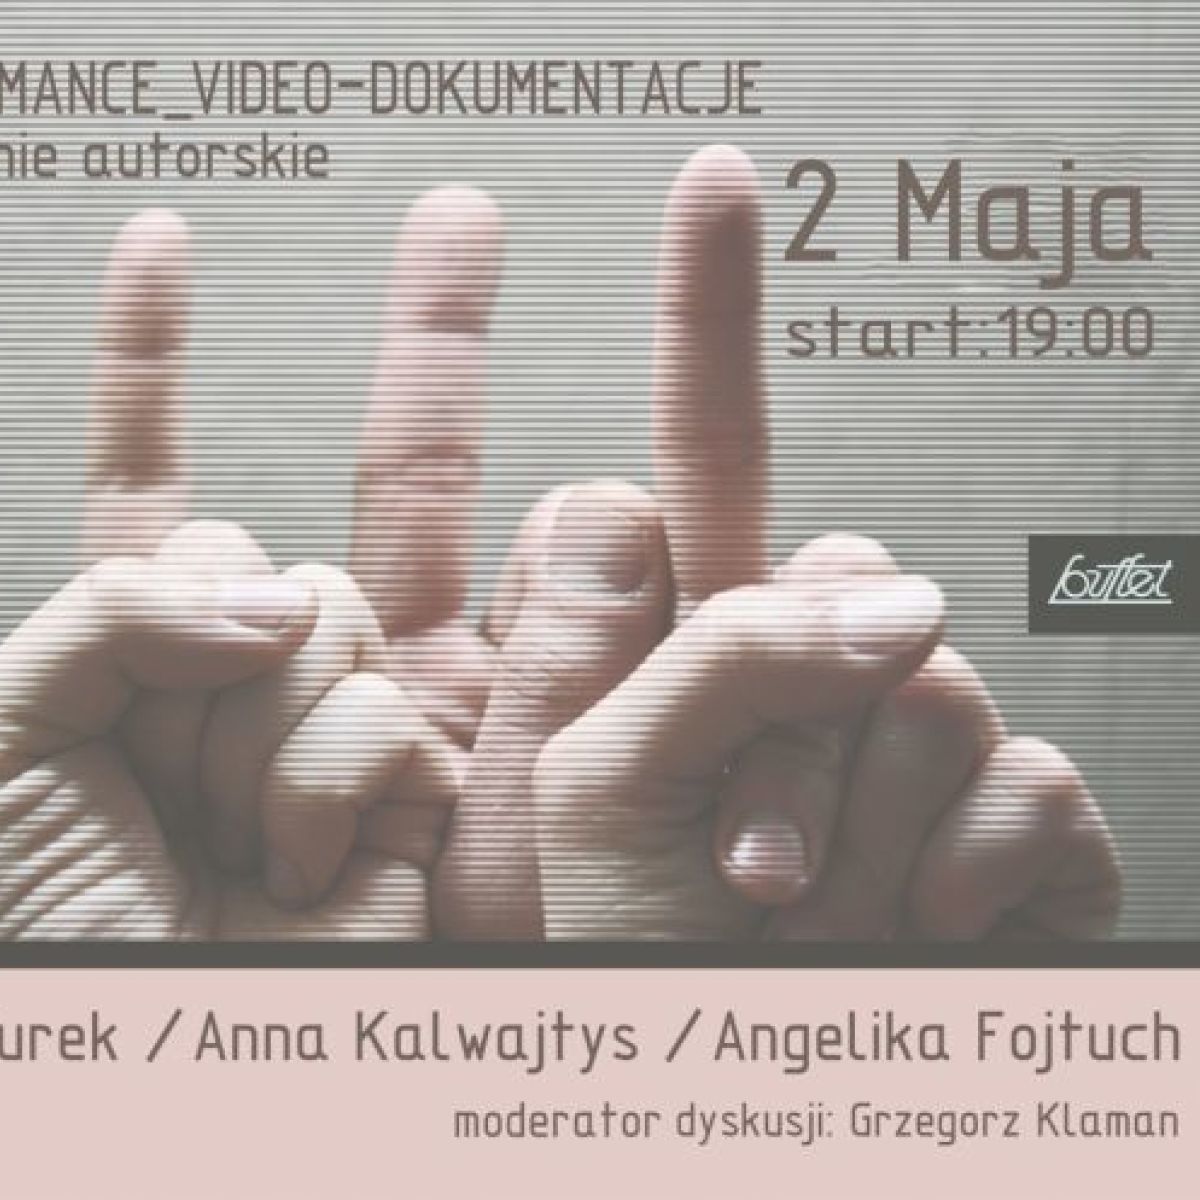 Spotkanie autorskie Performance_video-dokumentacje w Gdańsku